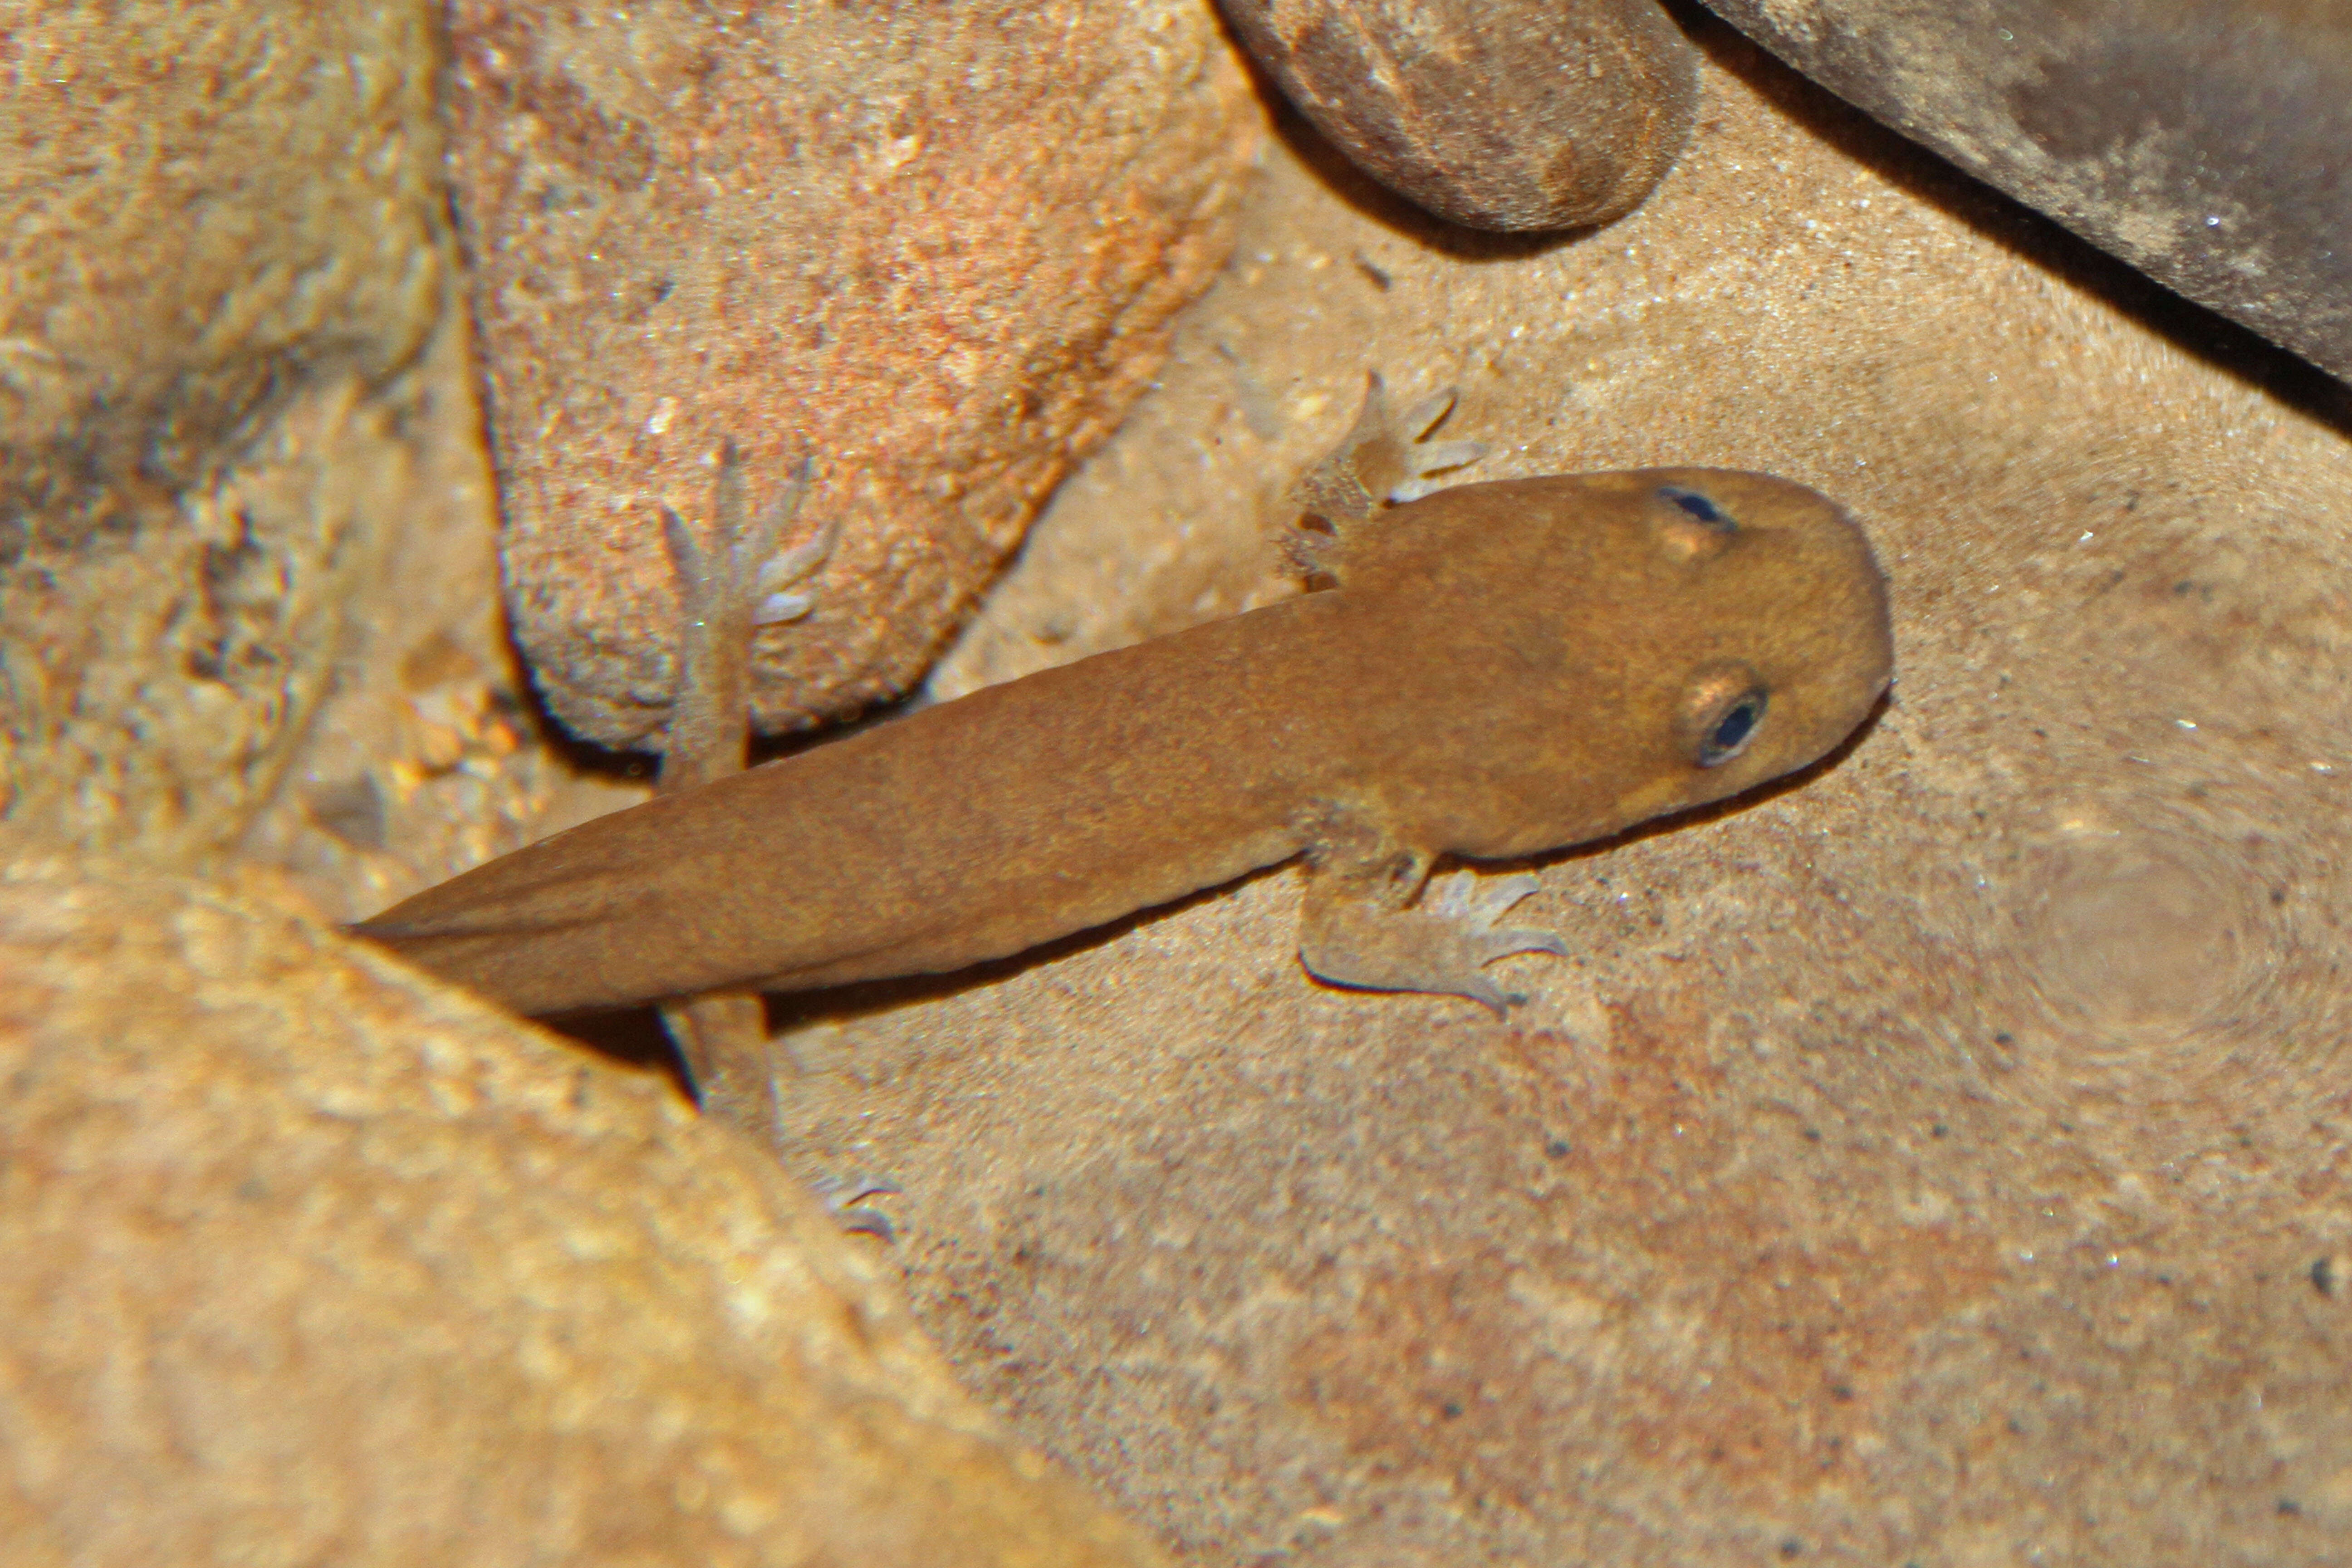 Image of California Giant Salamander